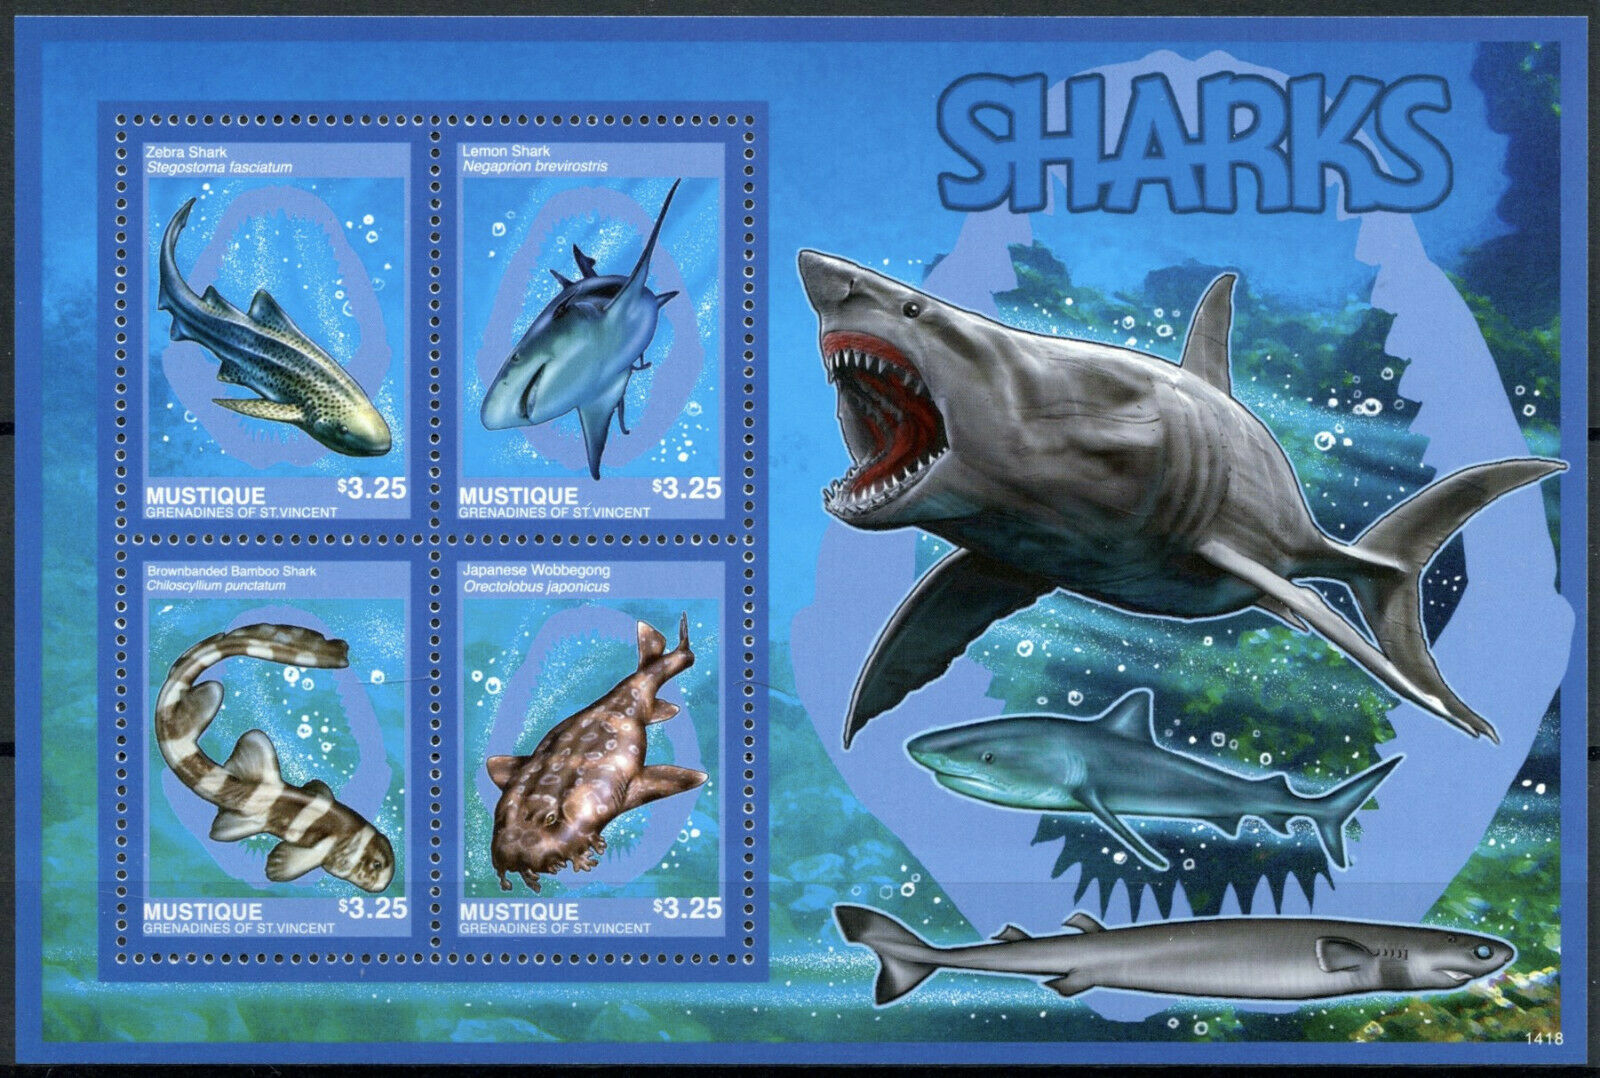 Mustique Gren St Vincent Sharks Stamps 2014 MNH Lemon Shark Wobbegong 4v M/S II